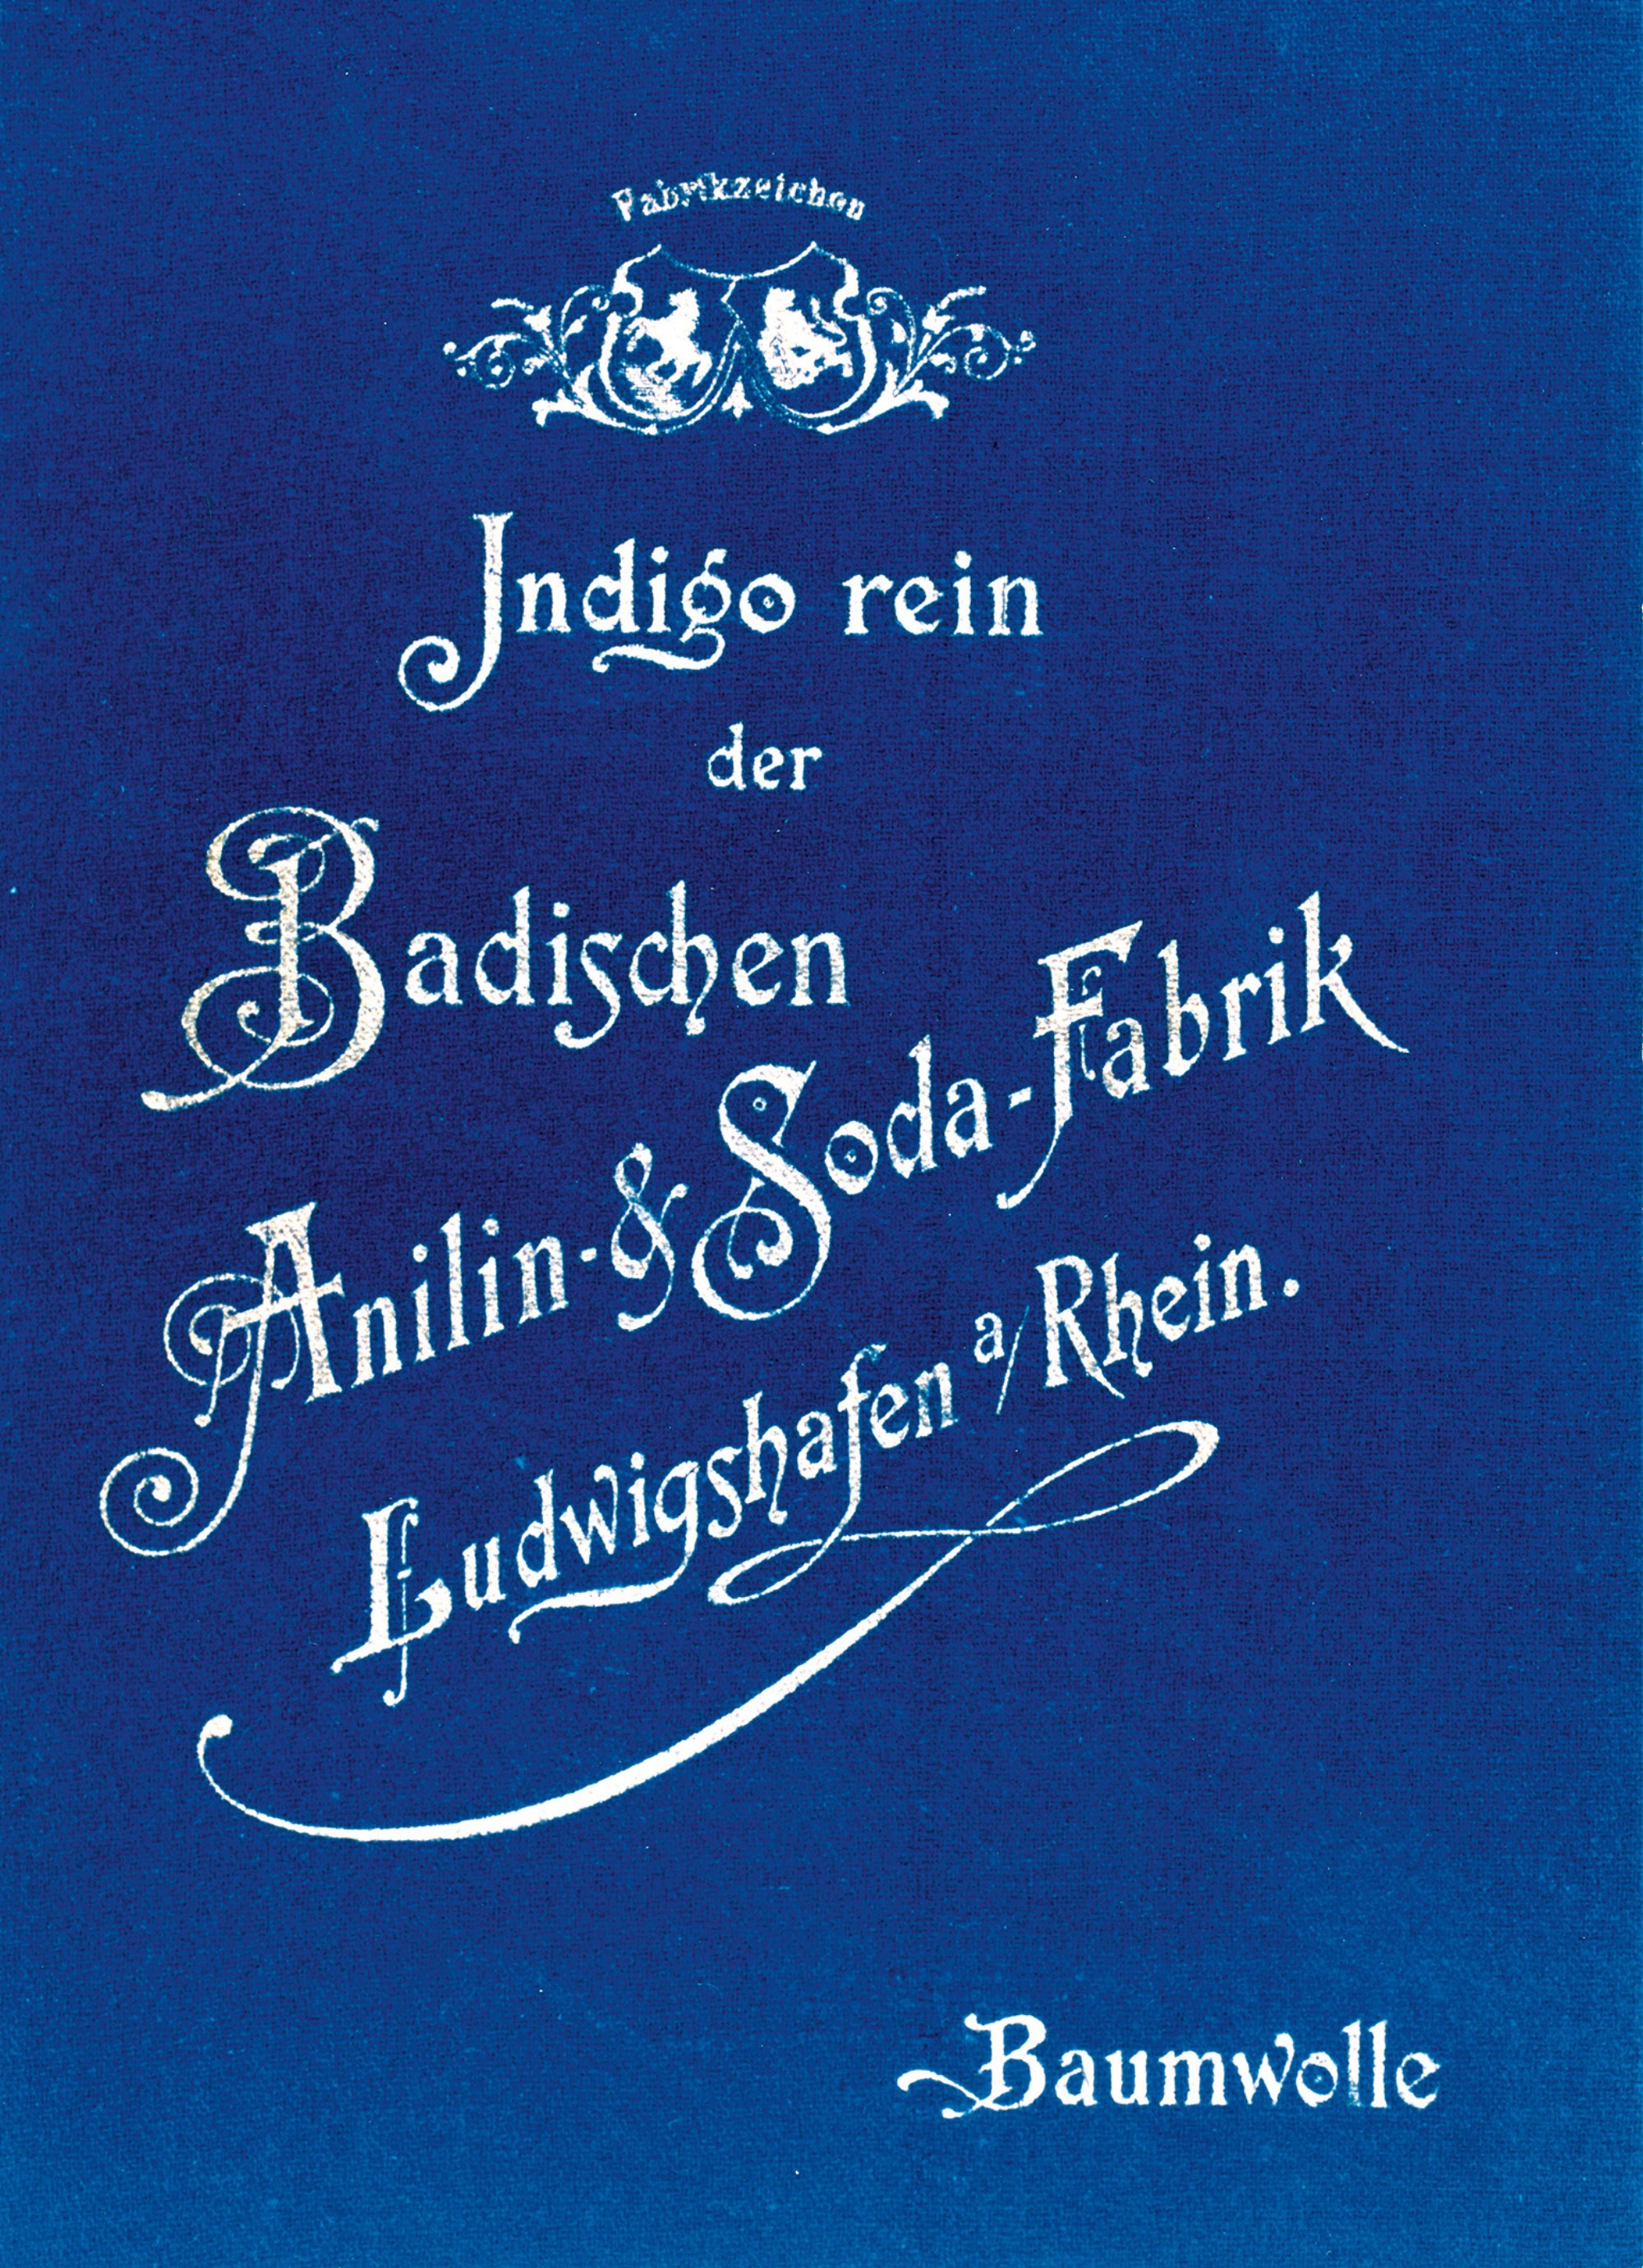 modrý letáček s bílým nápisem v německém jazyku